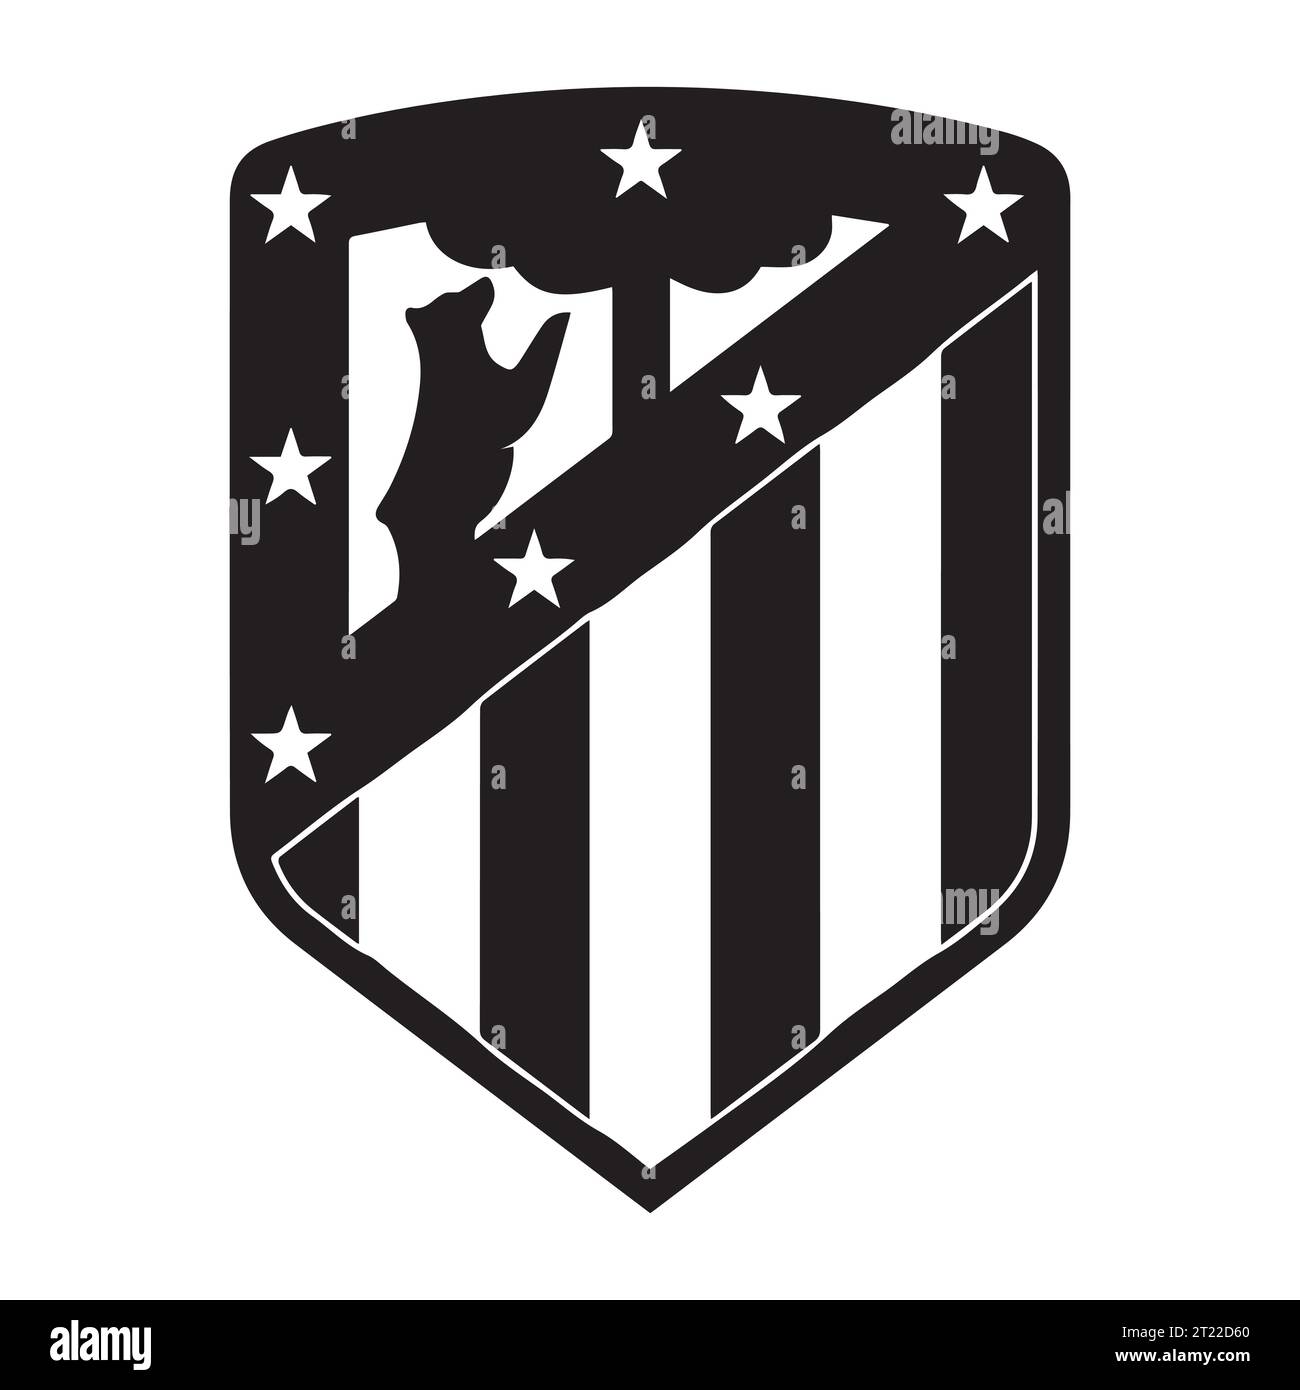 Atletico Madrid Schwarz-weiß-Logo Spanien professioneller Fußballverein, Vektor-Illustration abstraktes Schwarz-weiß-bearbeitbares Bild Stock Vektor